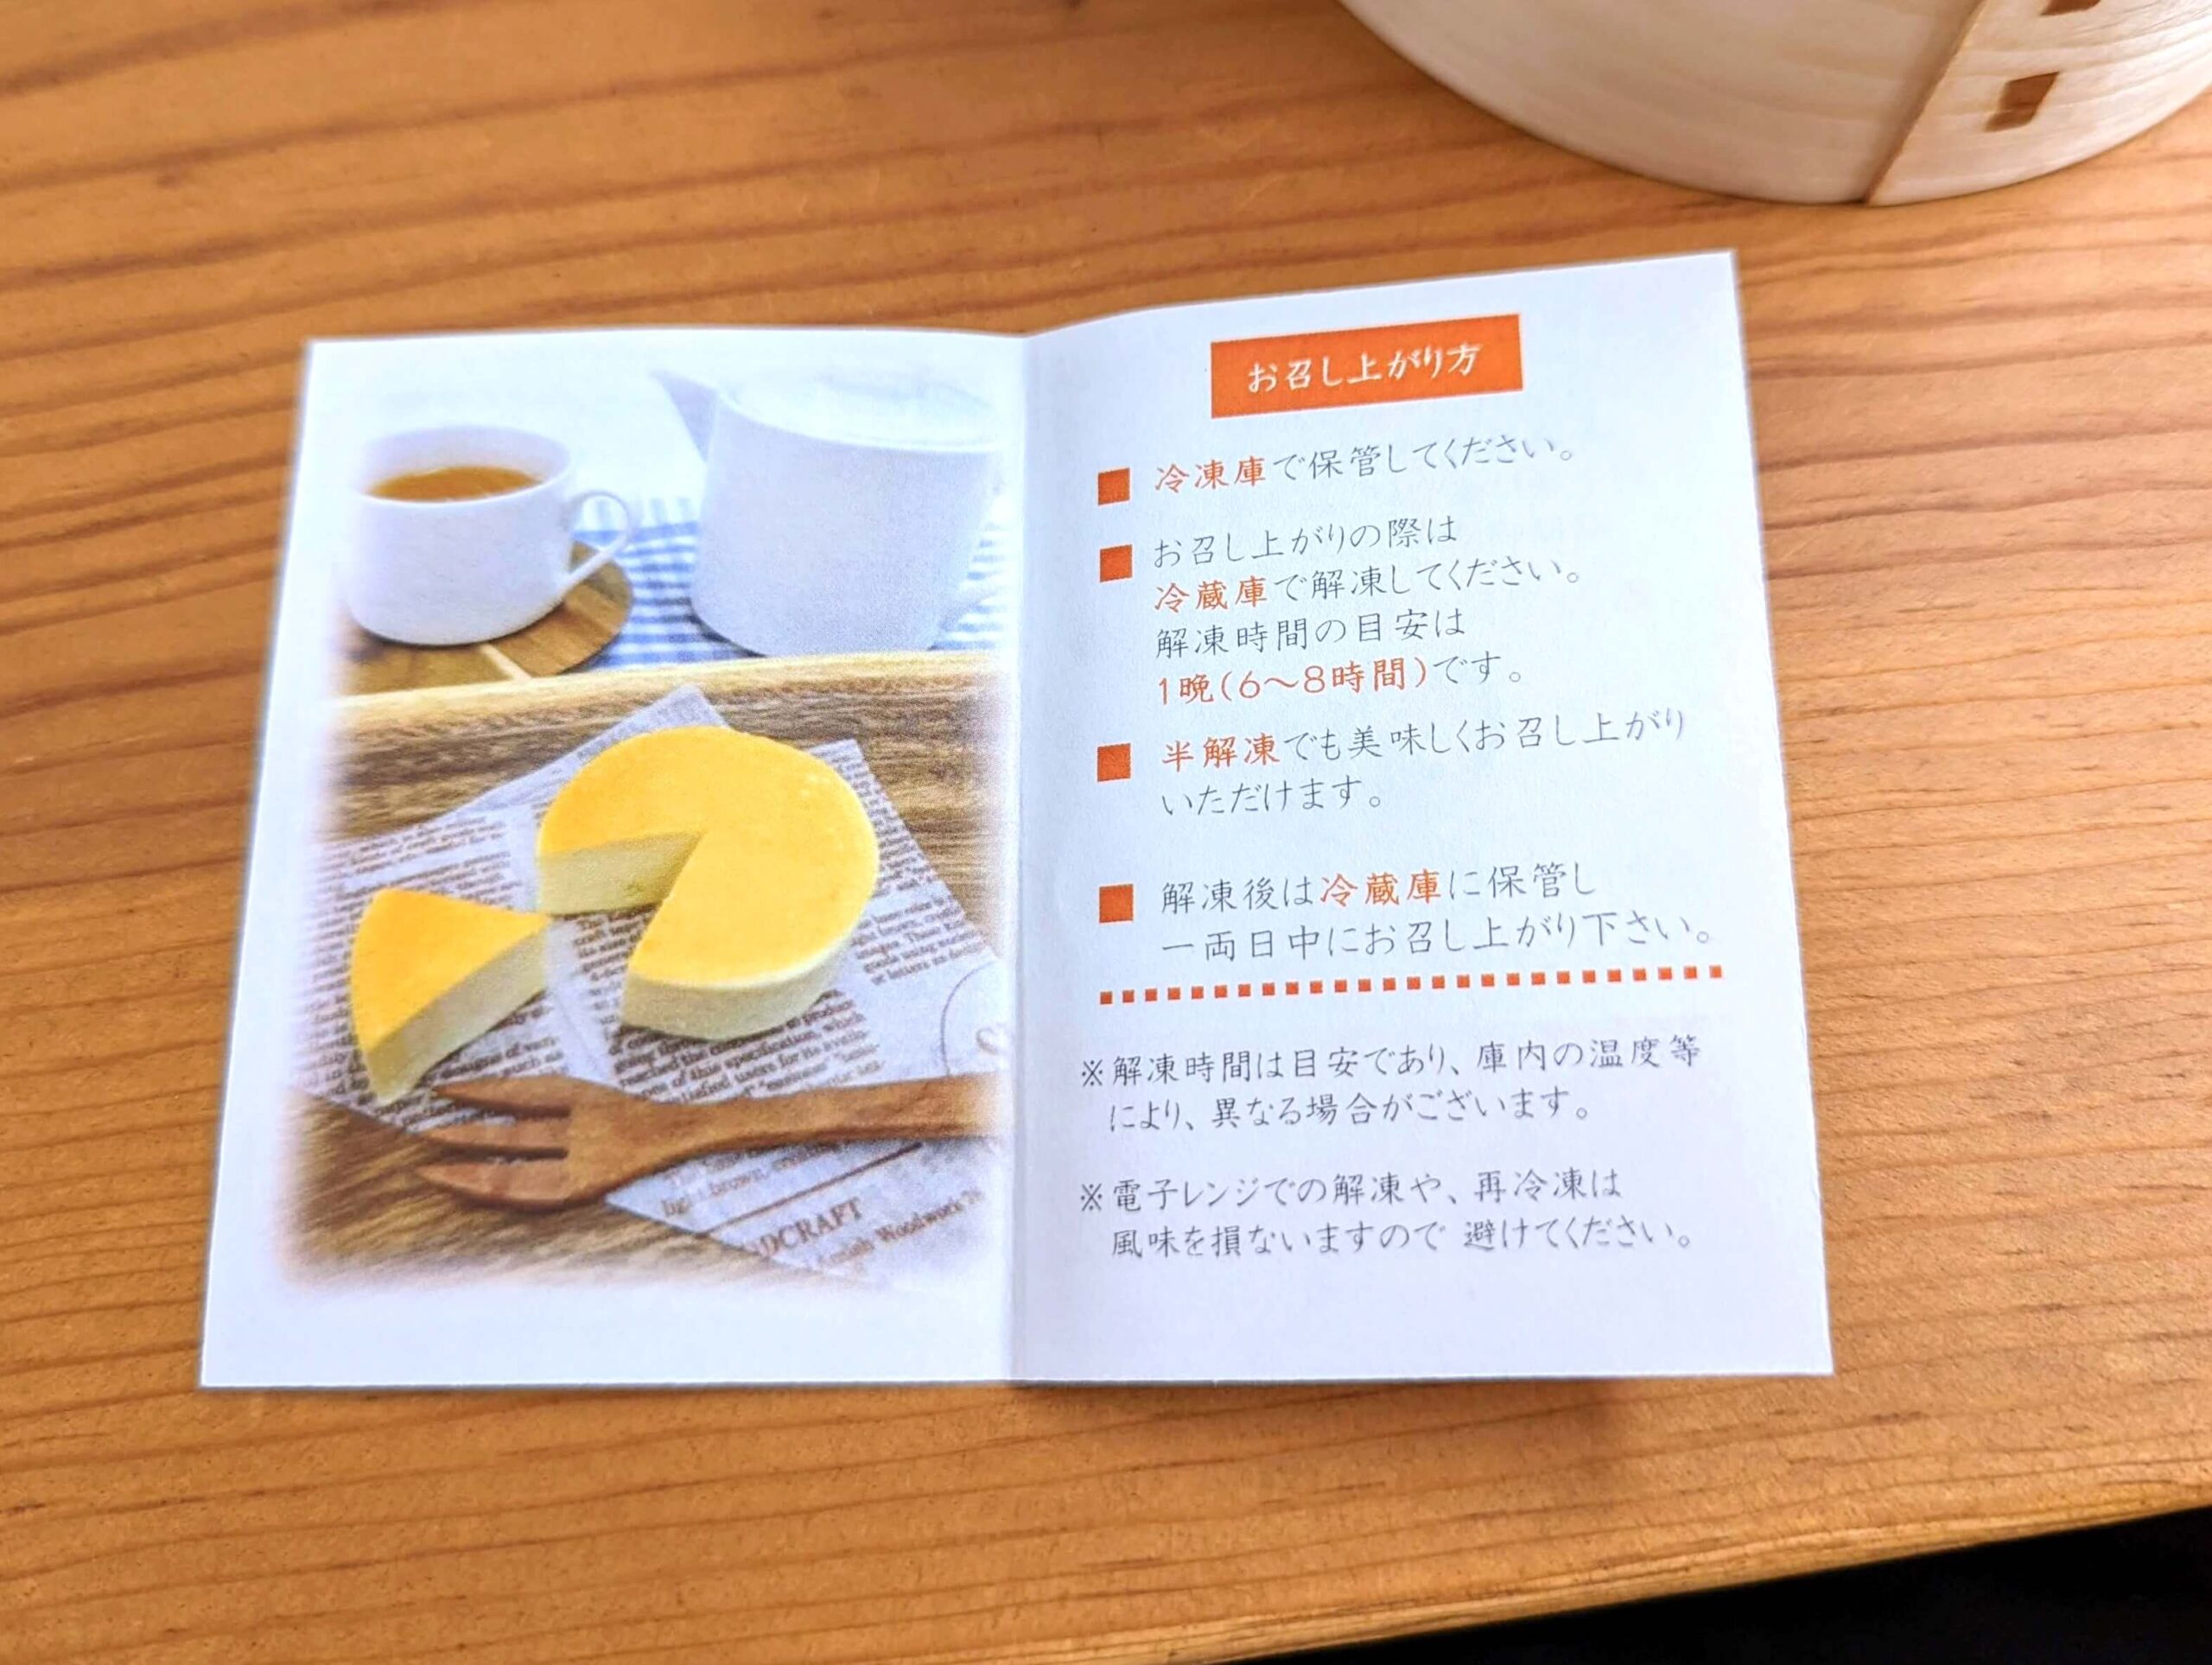 ヤマサ蒲鉾「お魚のチーズケーキ」 (12)